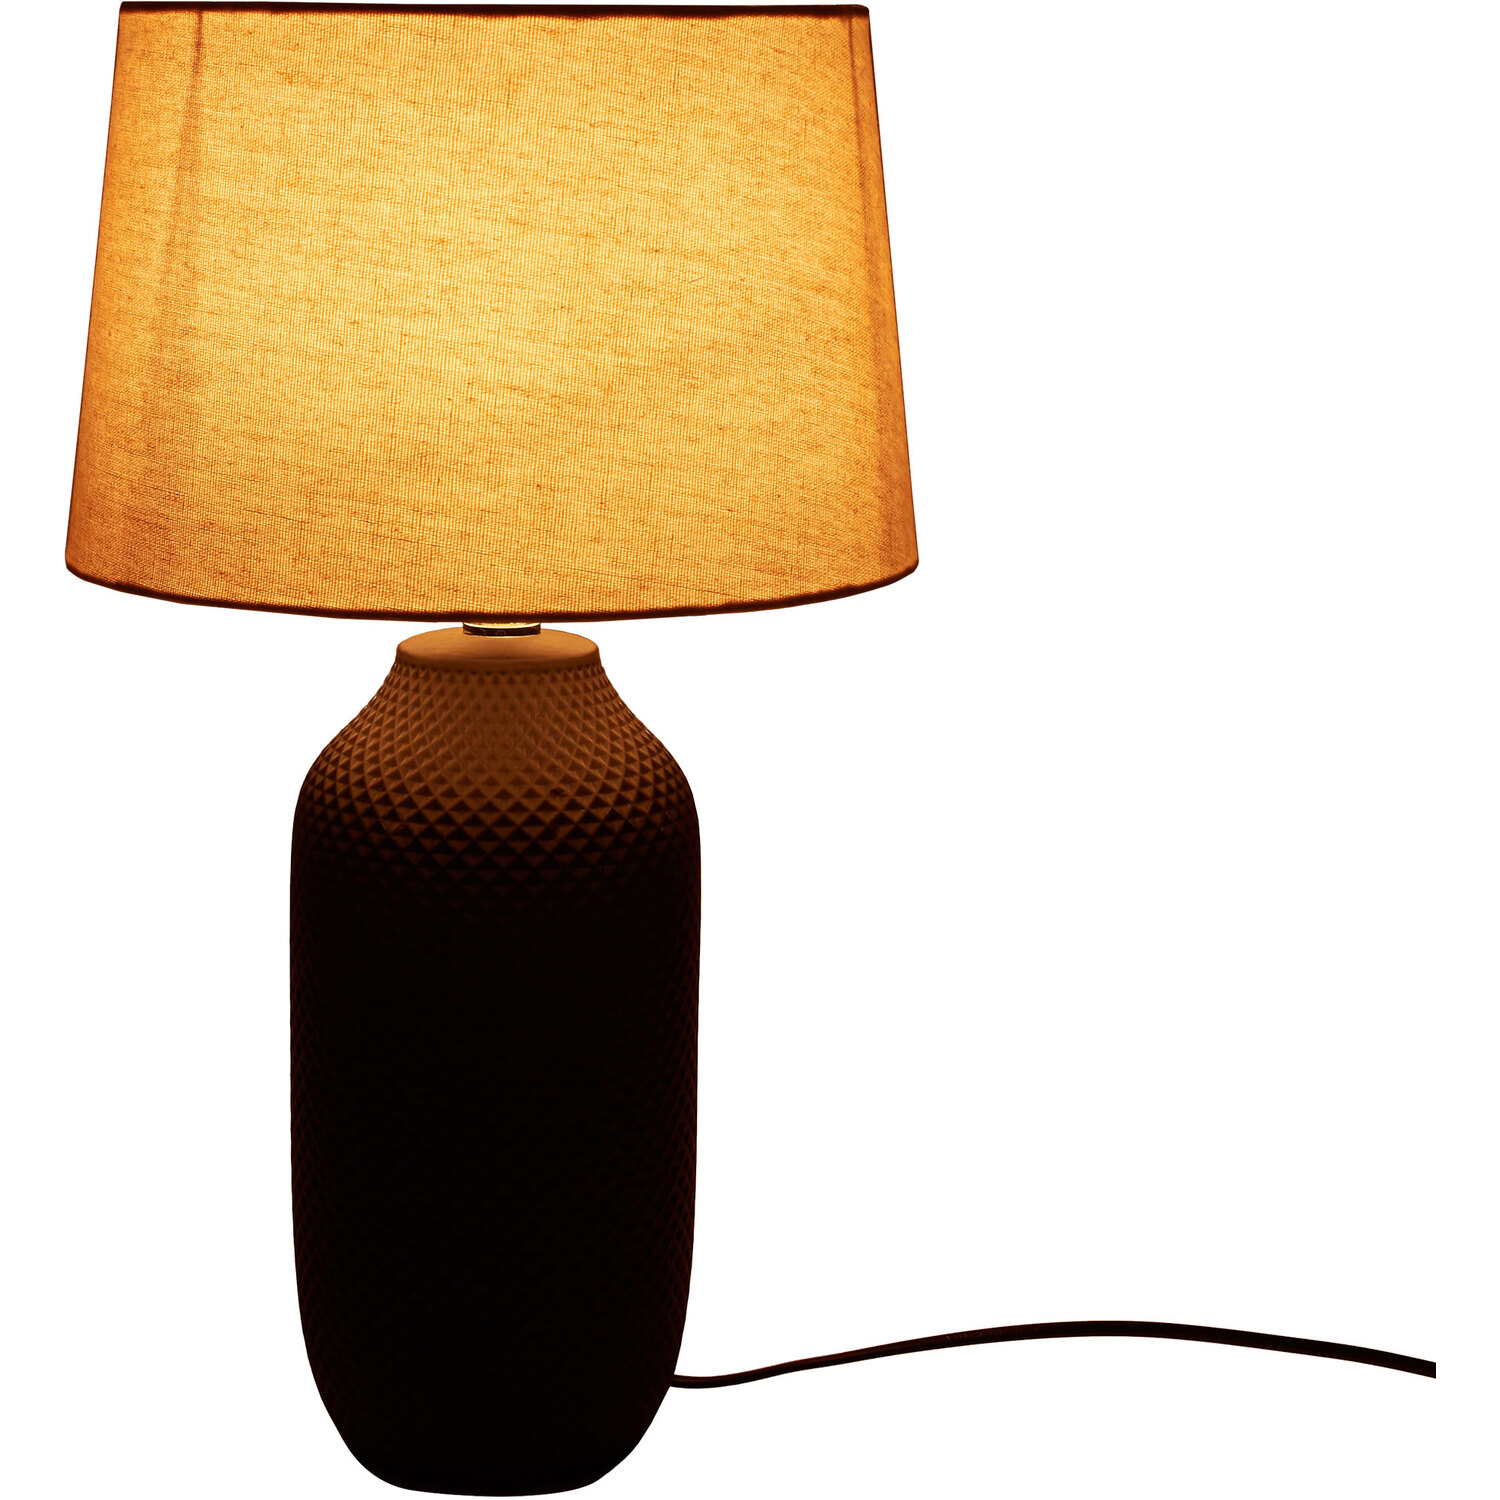 Remington Table Lamp - Black Image 3